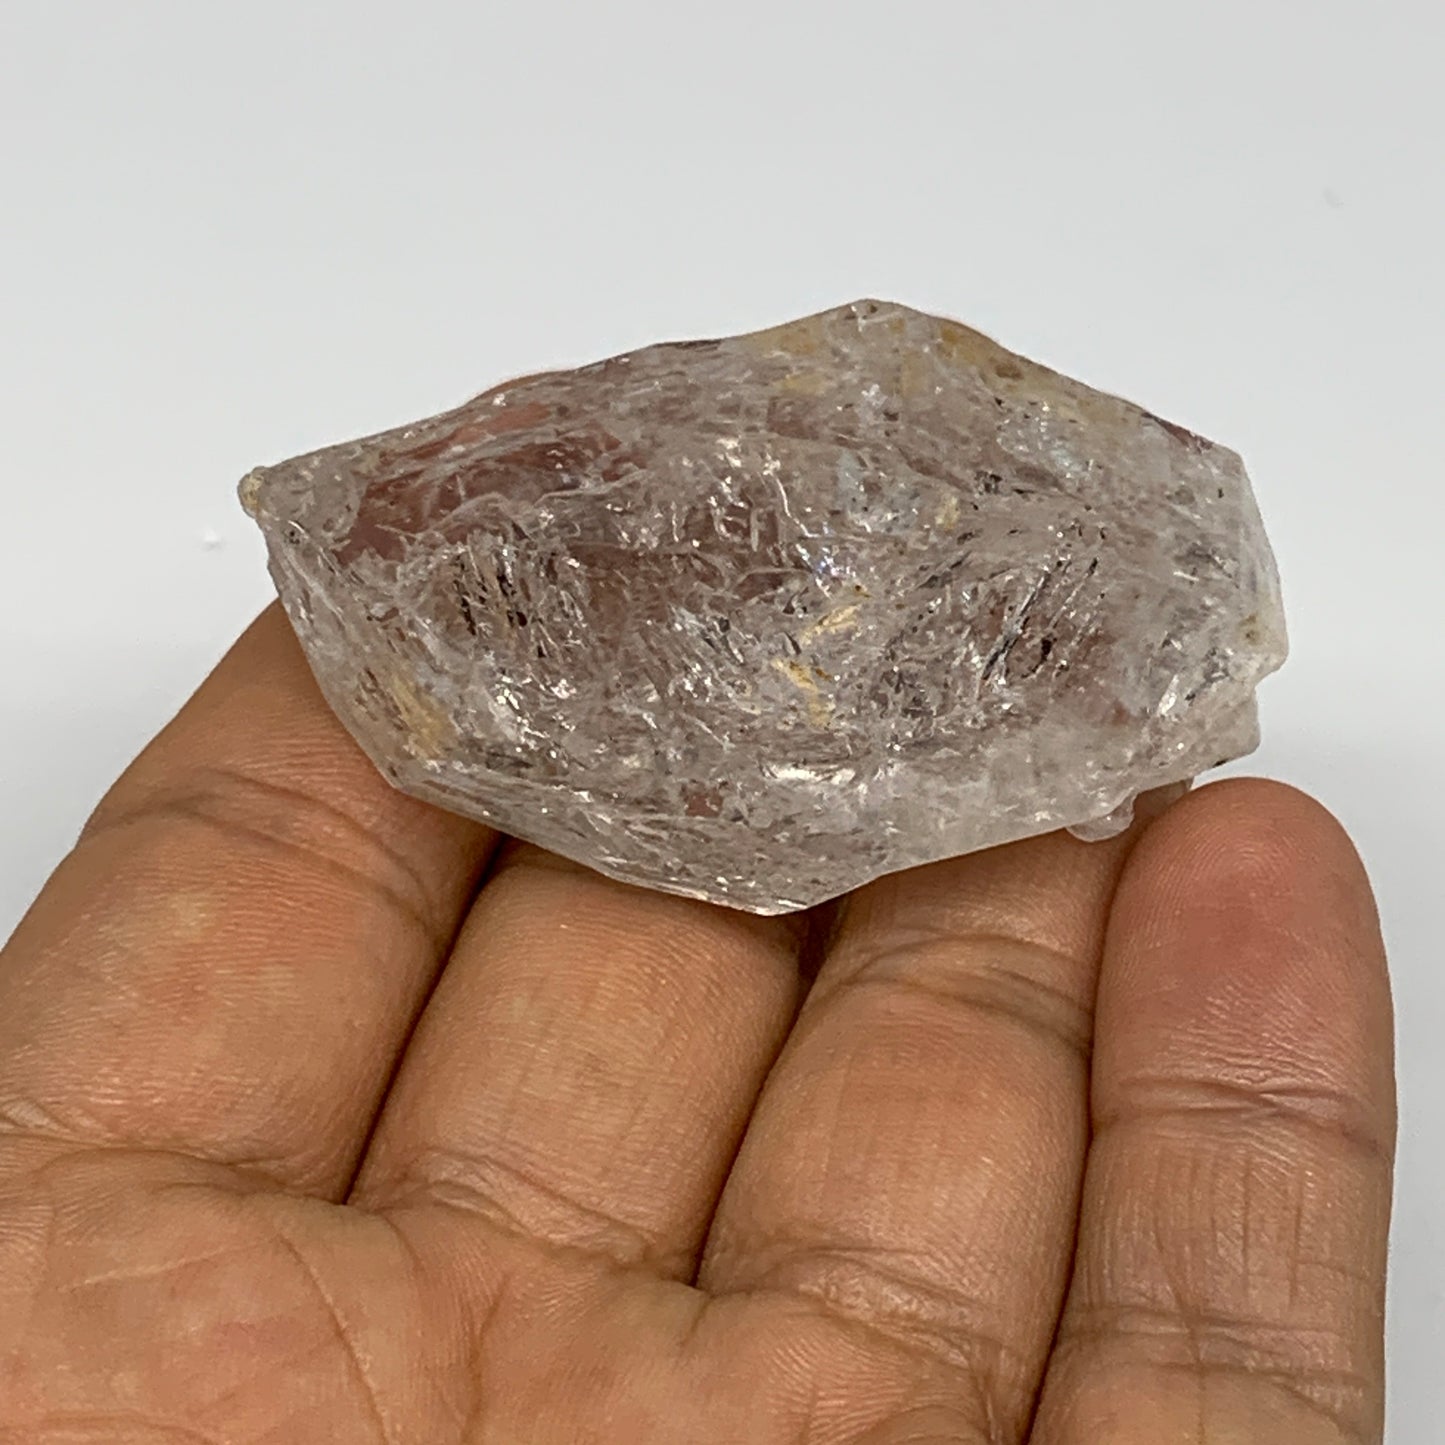 43.7g, 2"x1.2"x0.9", Natural Window Quartz Crystal Terminated @Pakistan,B27501